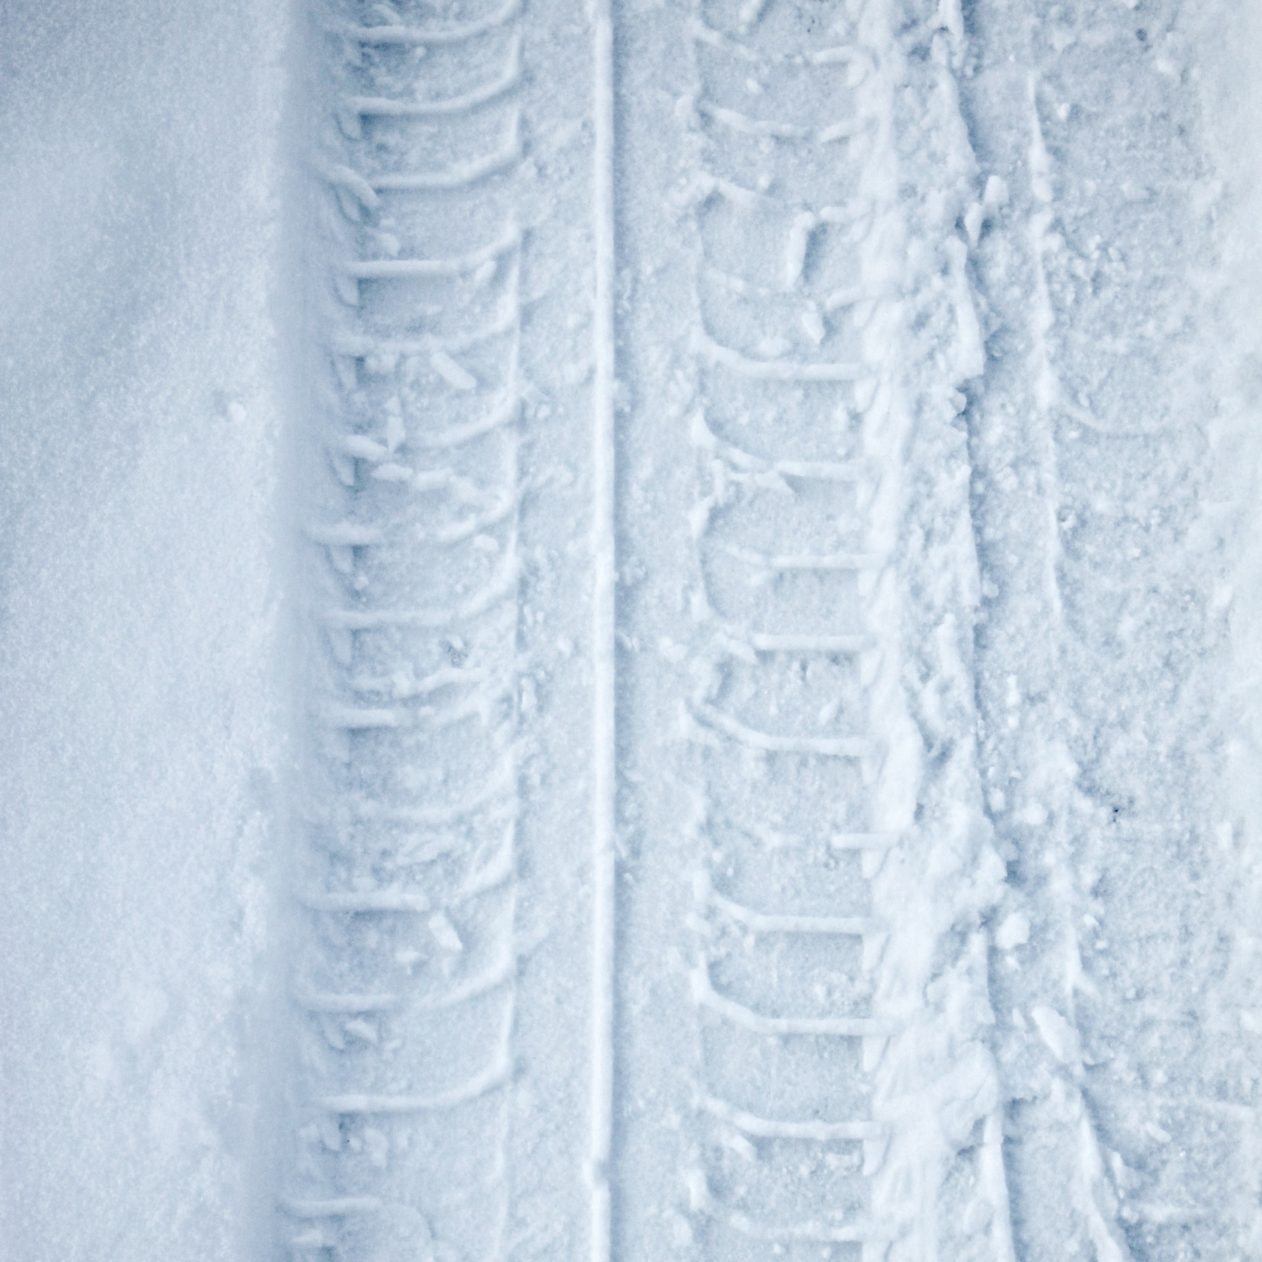 1262x1262 Parallax wallpaper 4k Tyre Track Snow Winter iPad Wallpaper 1262x1262 pixels resolution